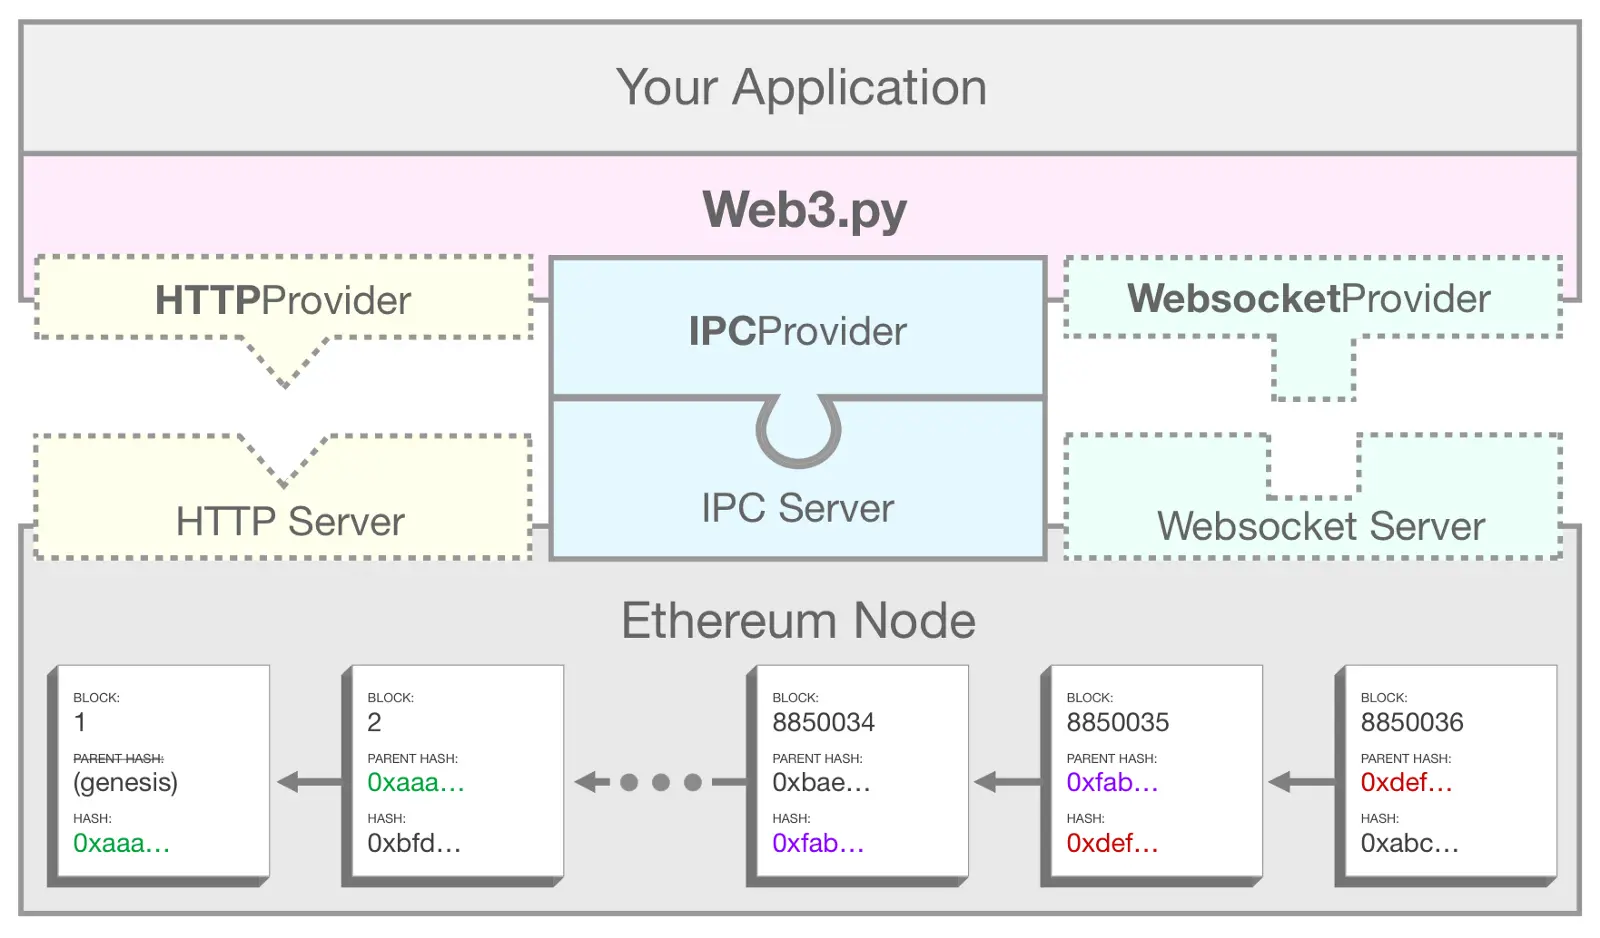 Un diagramma che mostra come web3.py utilizza IPC per collegare la tua applicazione a un nodo Ethereum